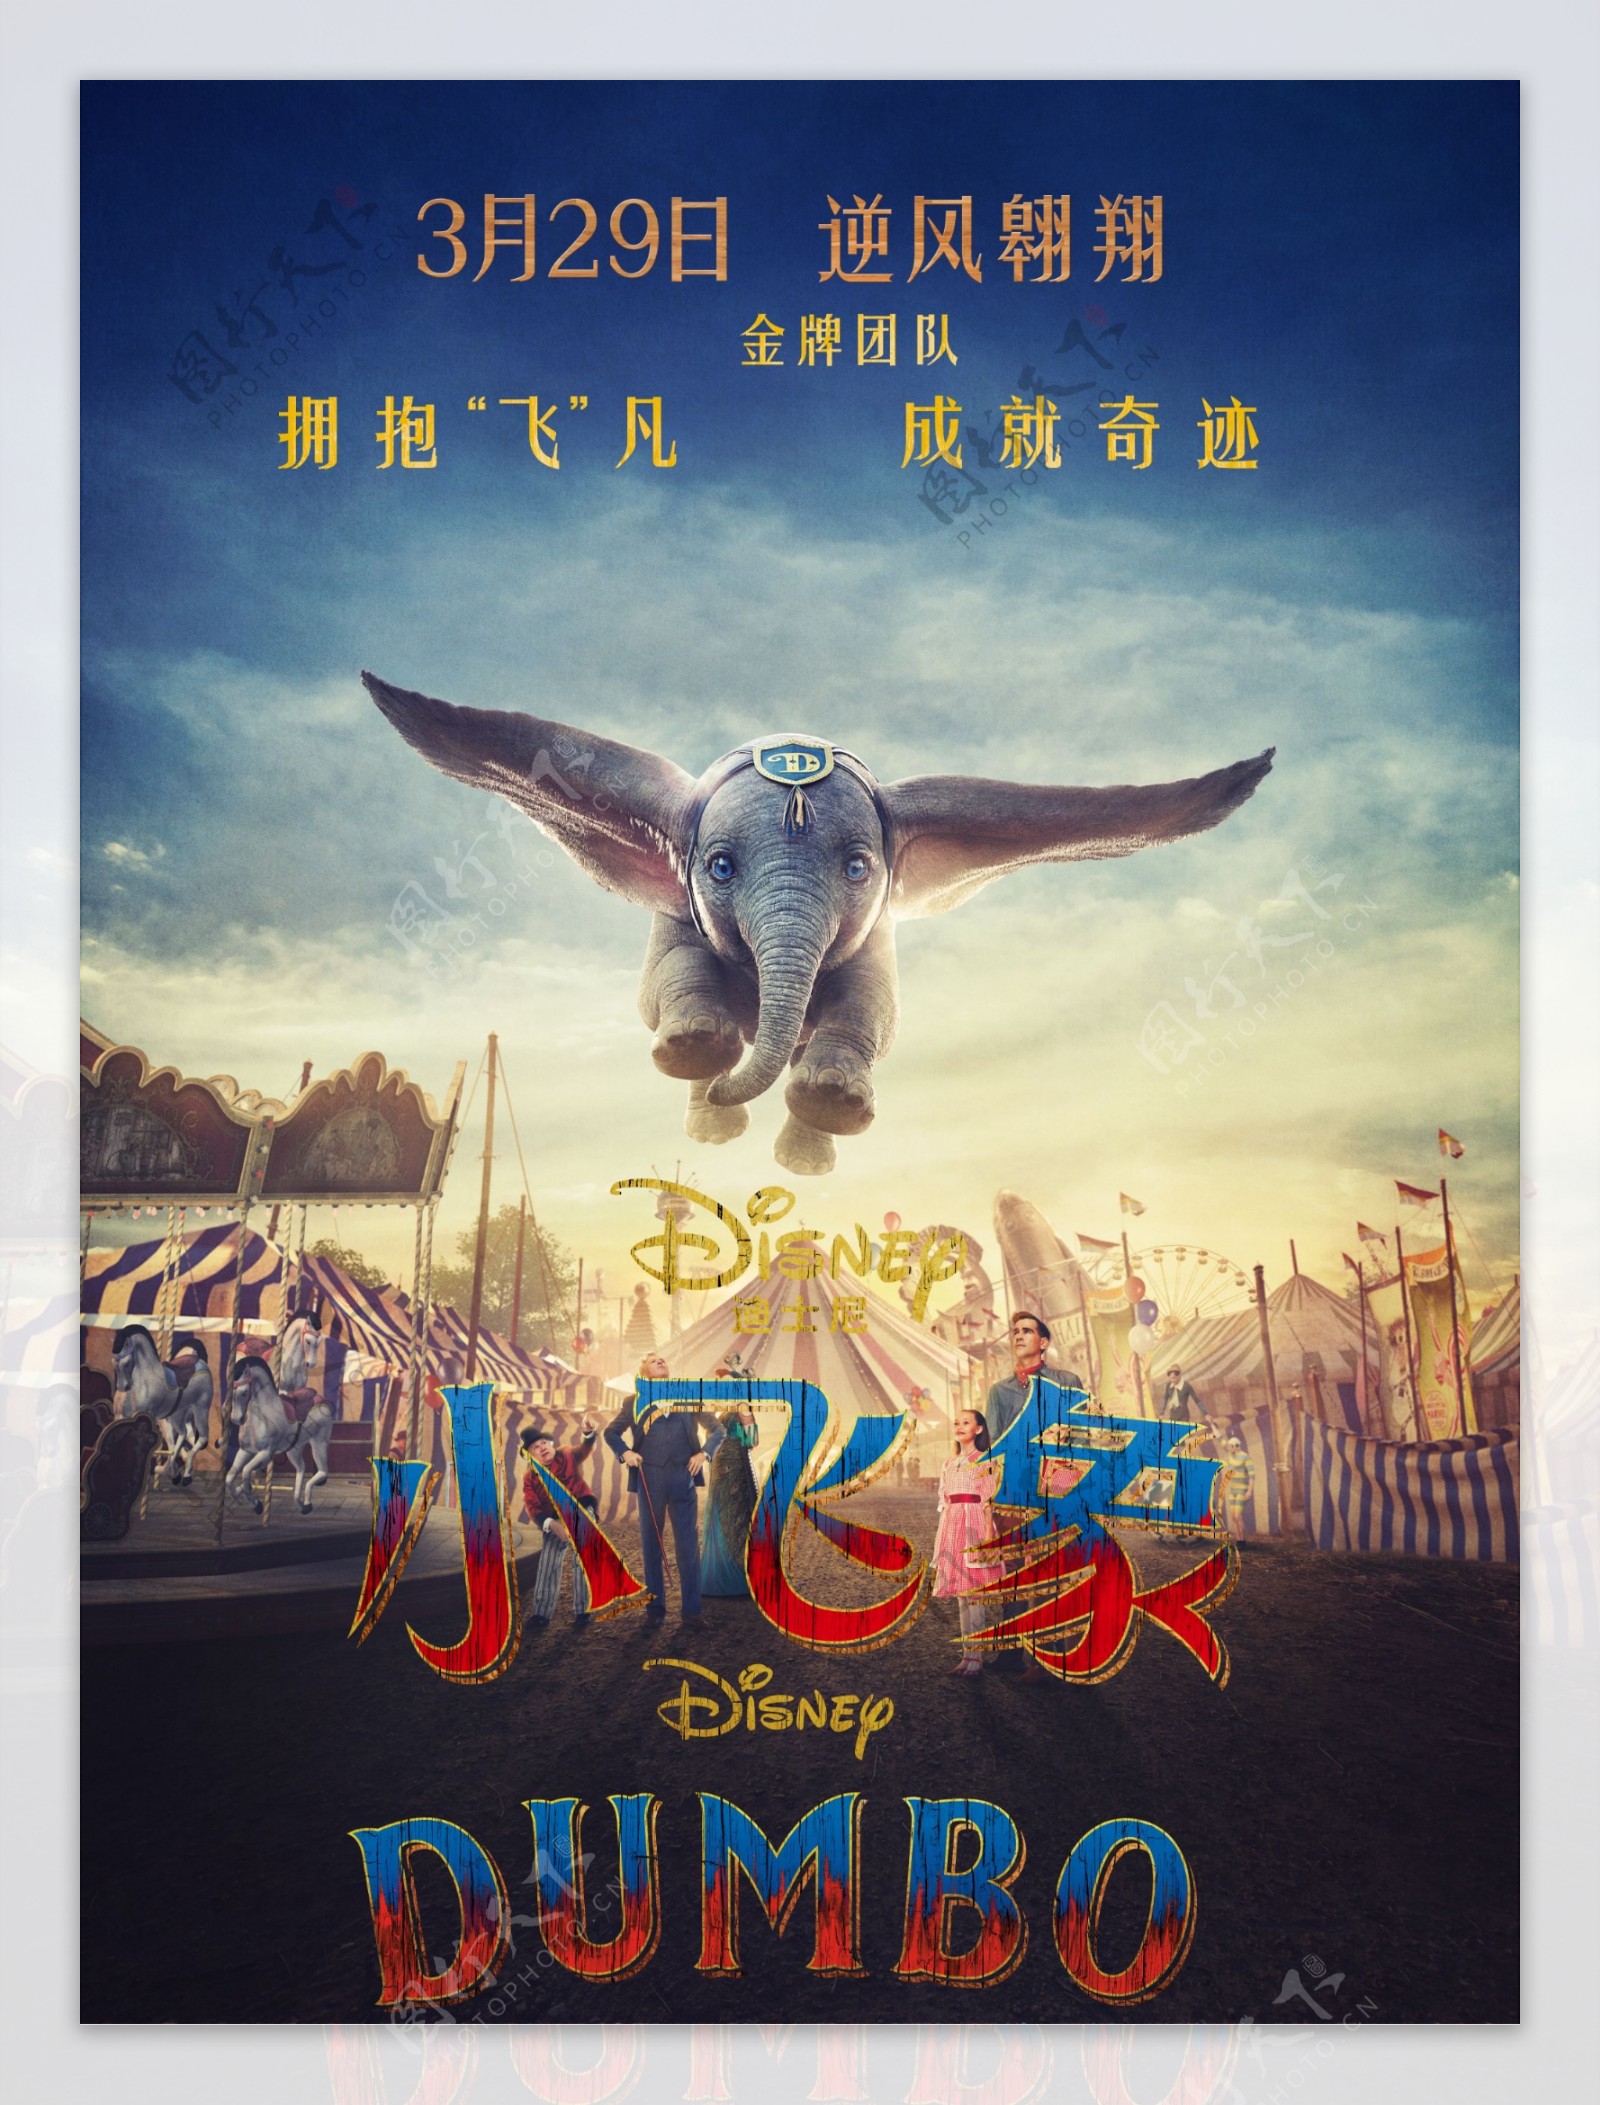 迪士尼电影小飞象竖版海报简层